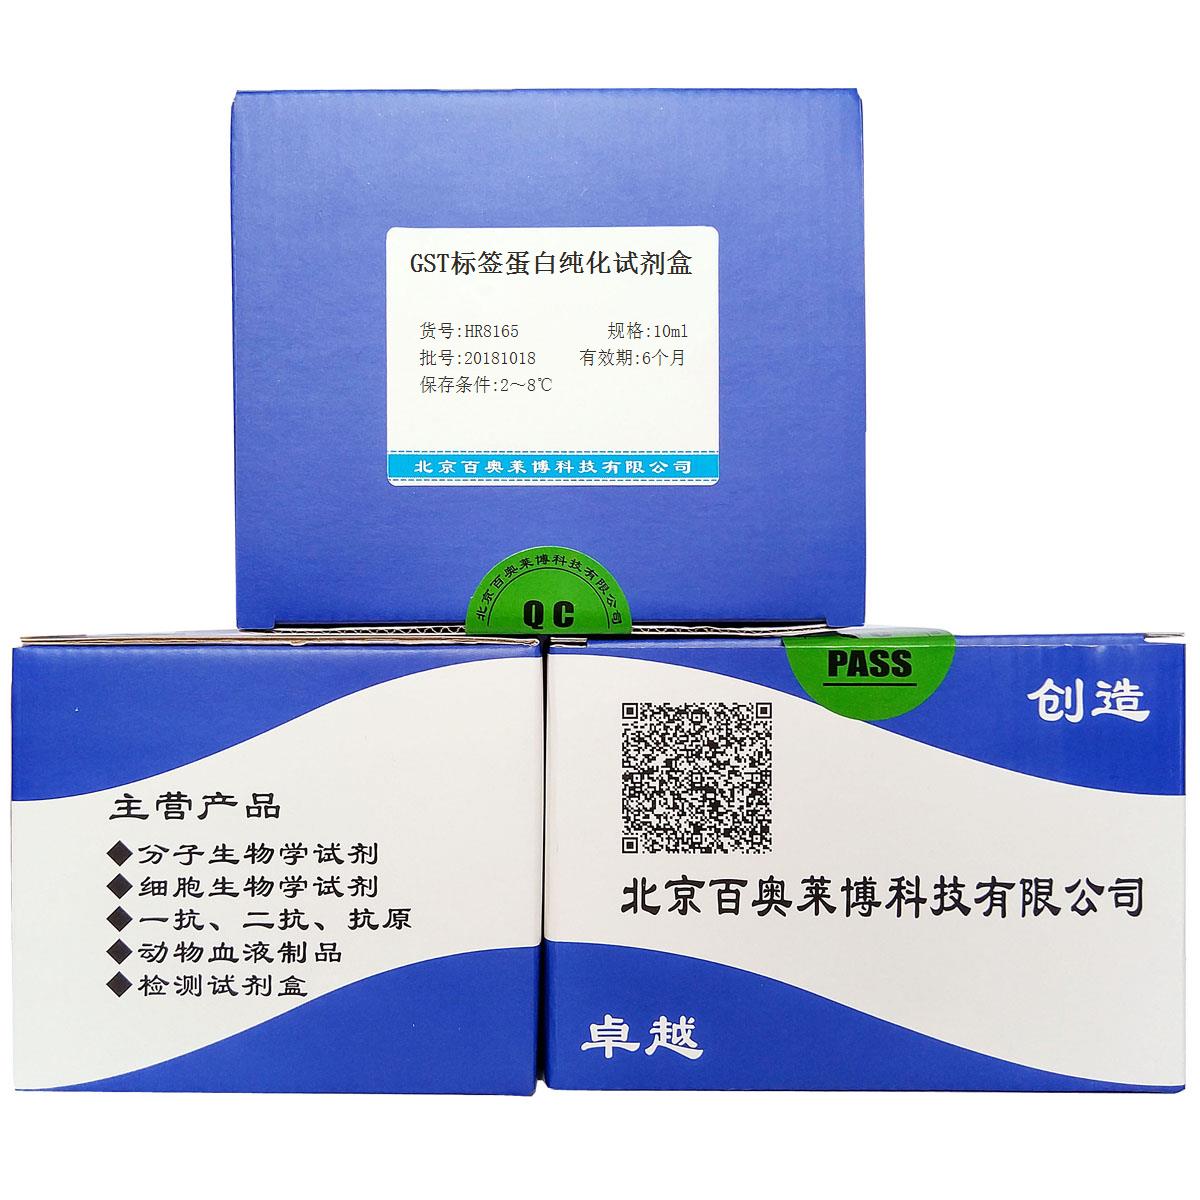 GST标签蛋白纯化试剂盒